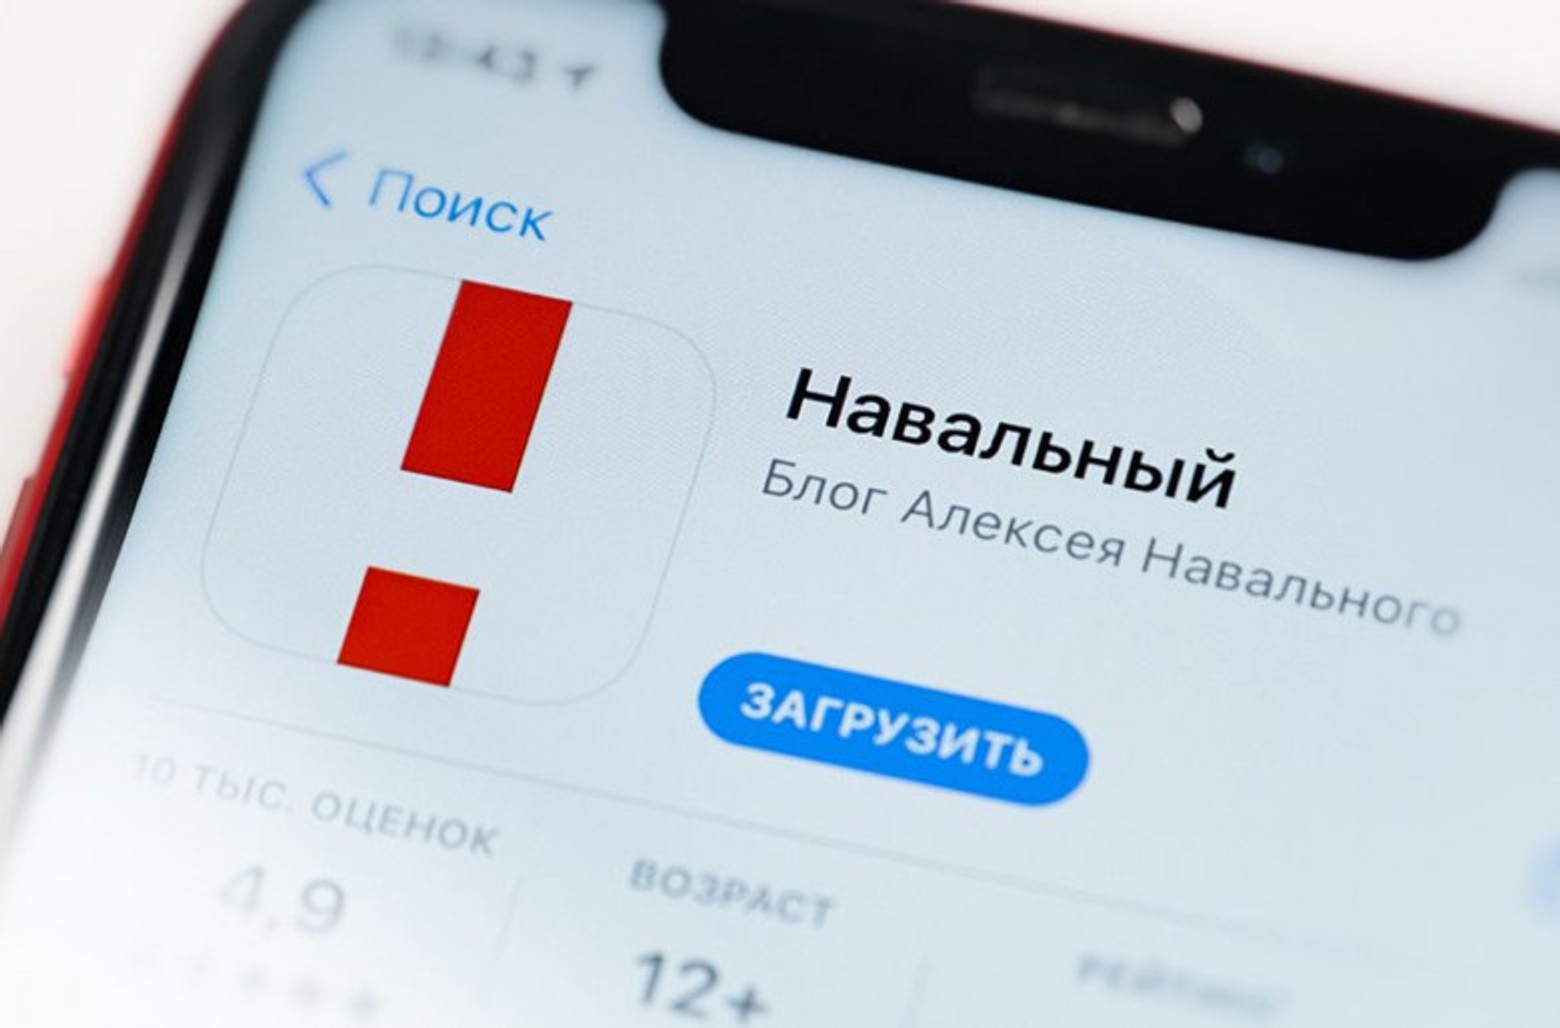 Google і Apple видалили додаток «Навальний» з російських магазинів Google Play і App Store